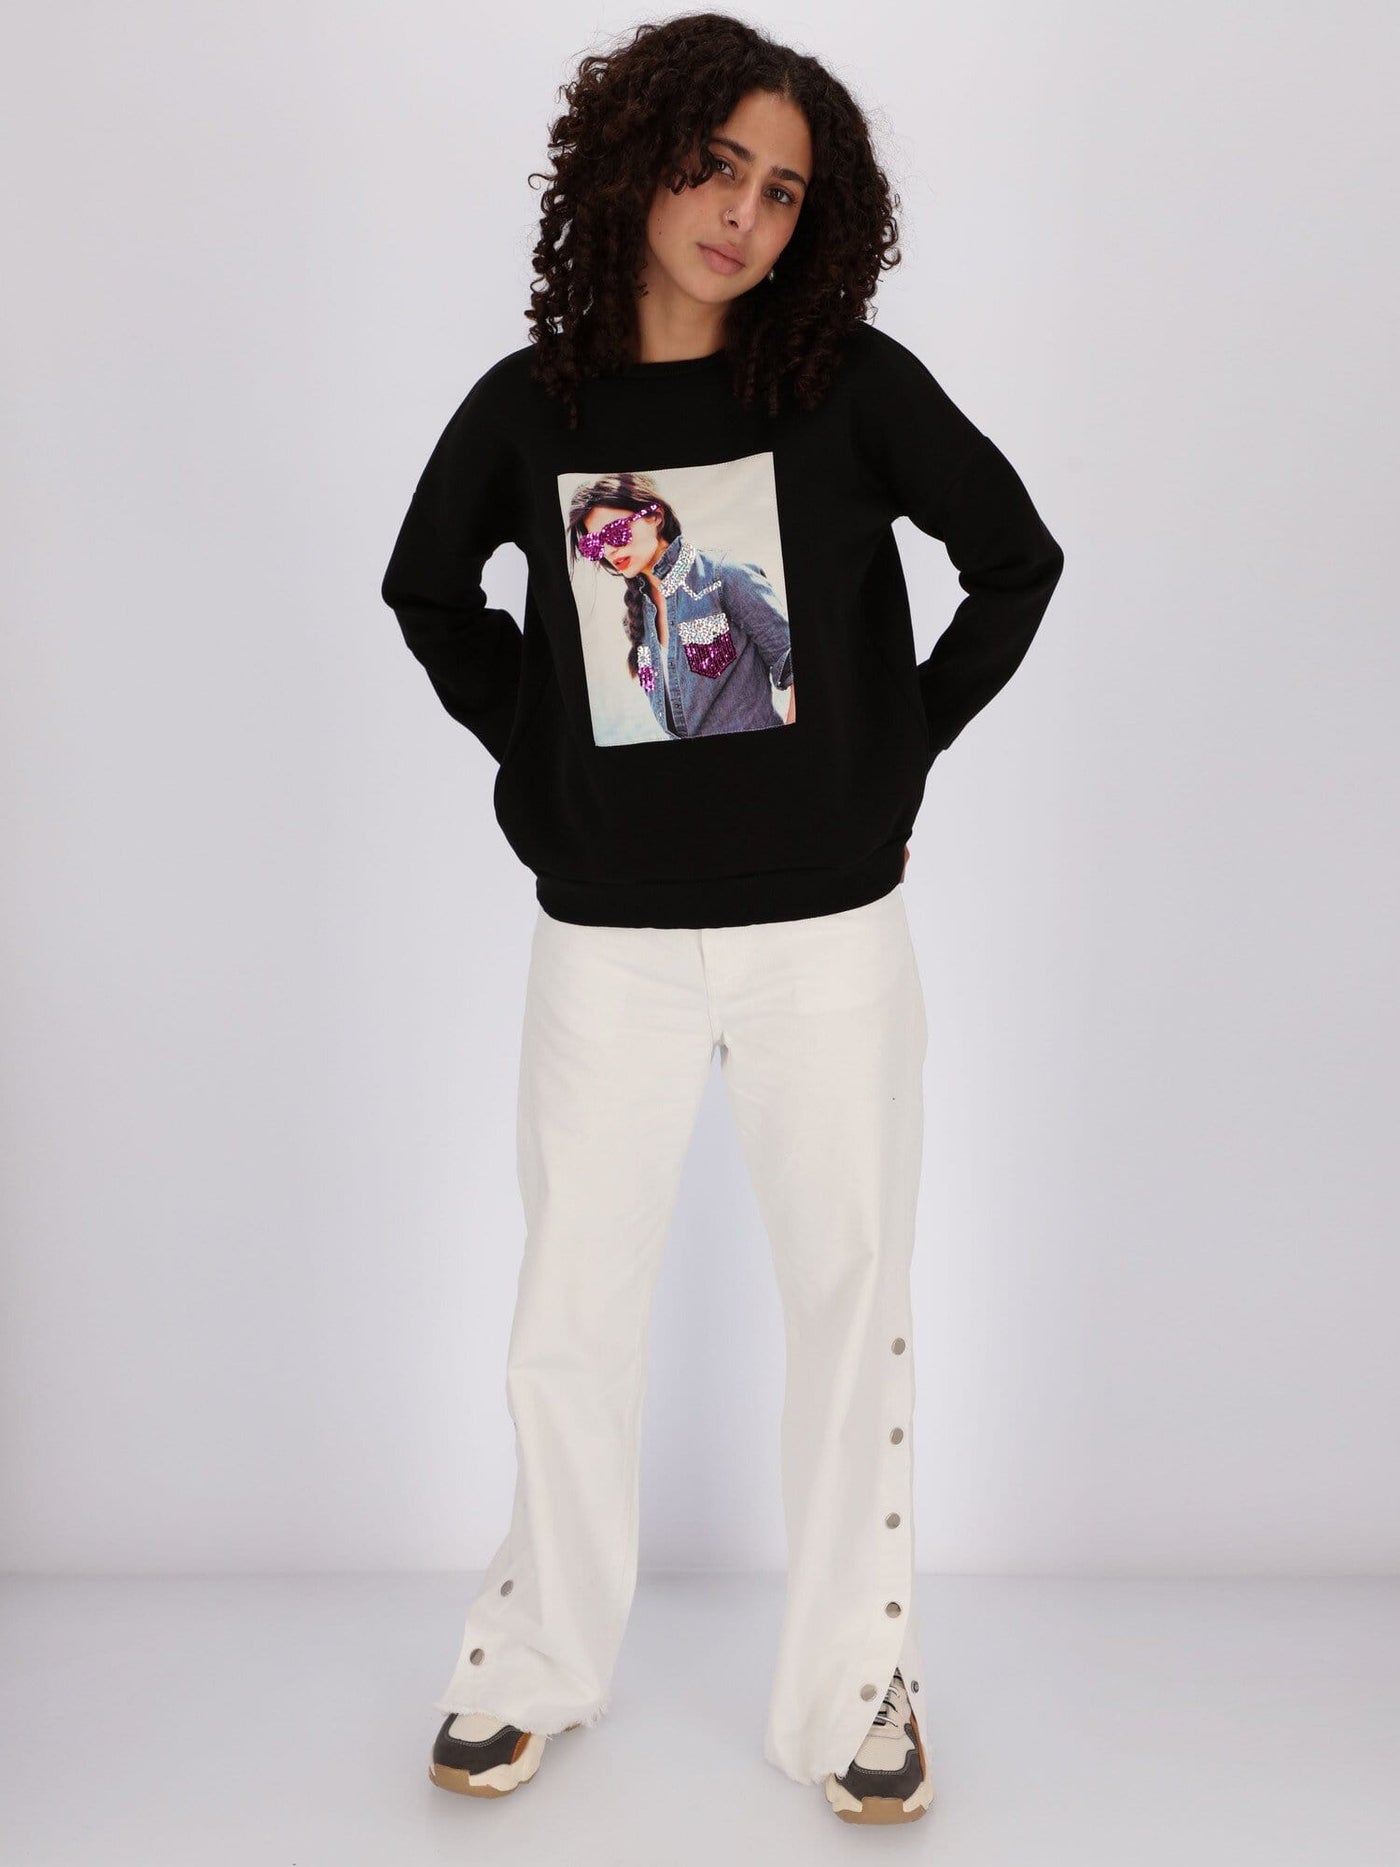 OR Sweatshirts & Hoodies Lady with Glasses Printed Sweatshirt